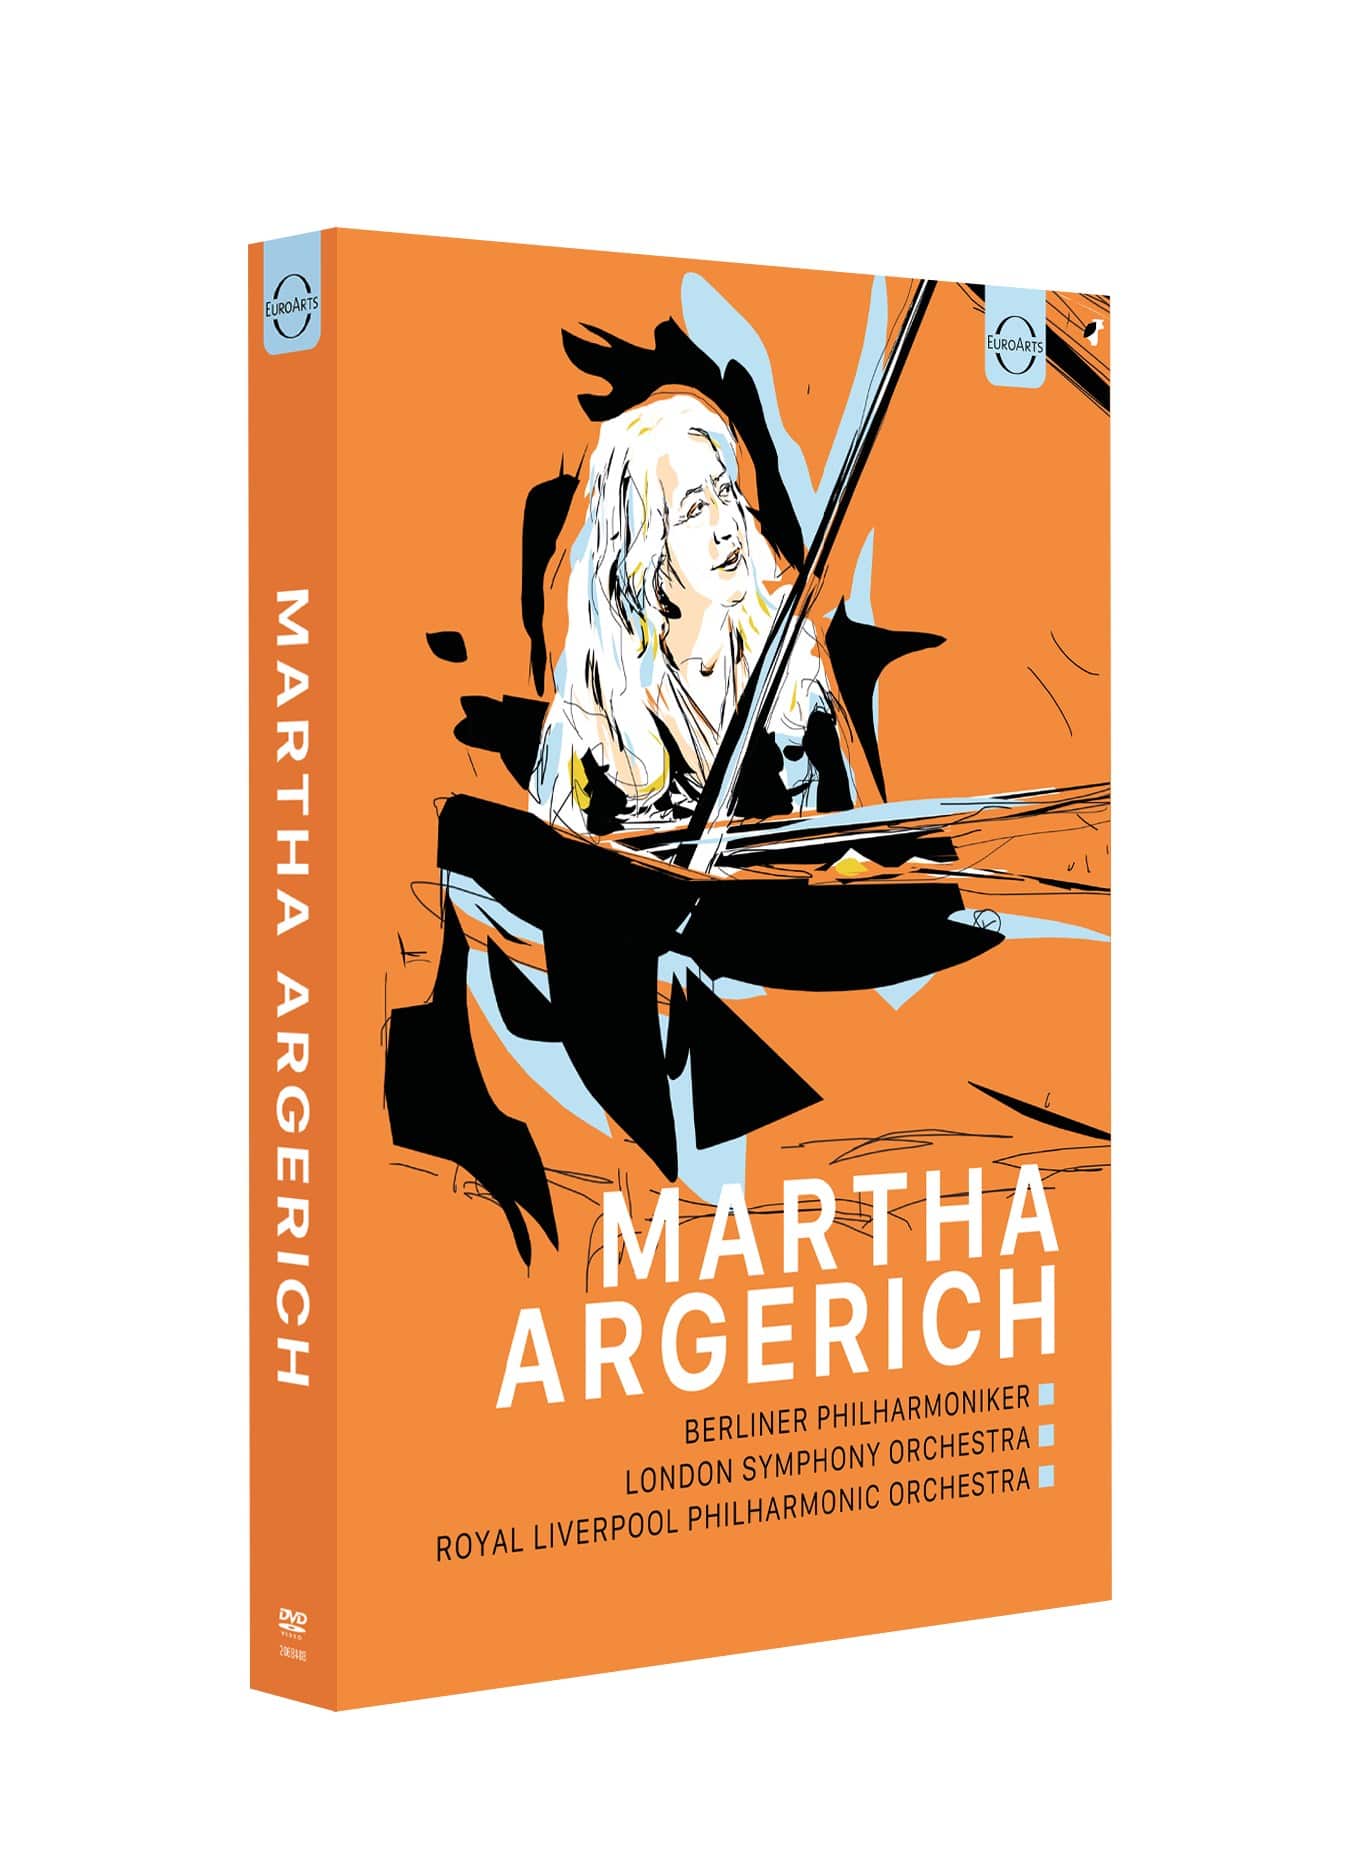 KING e-SHOP > マルタ・アルゲリッチ・ボックス (Martha Argerich Box